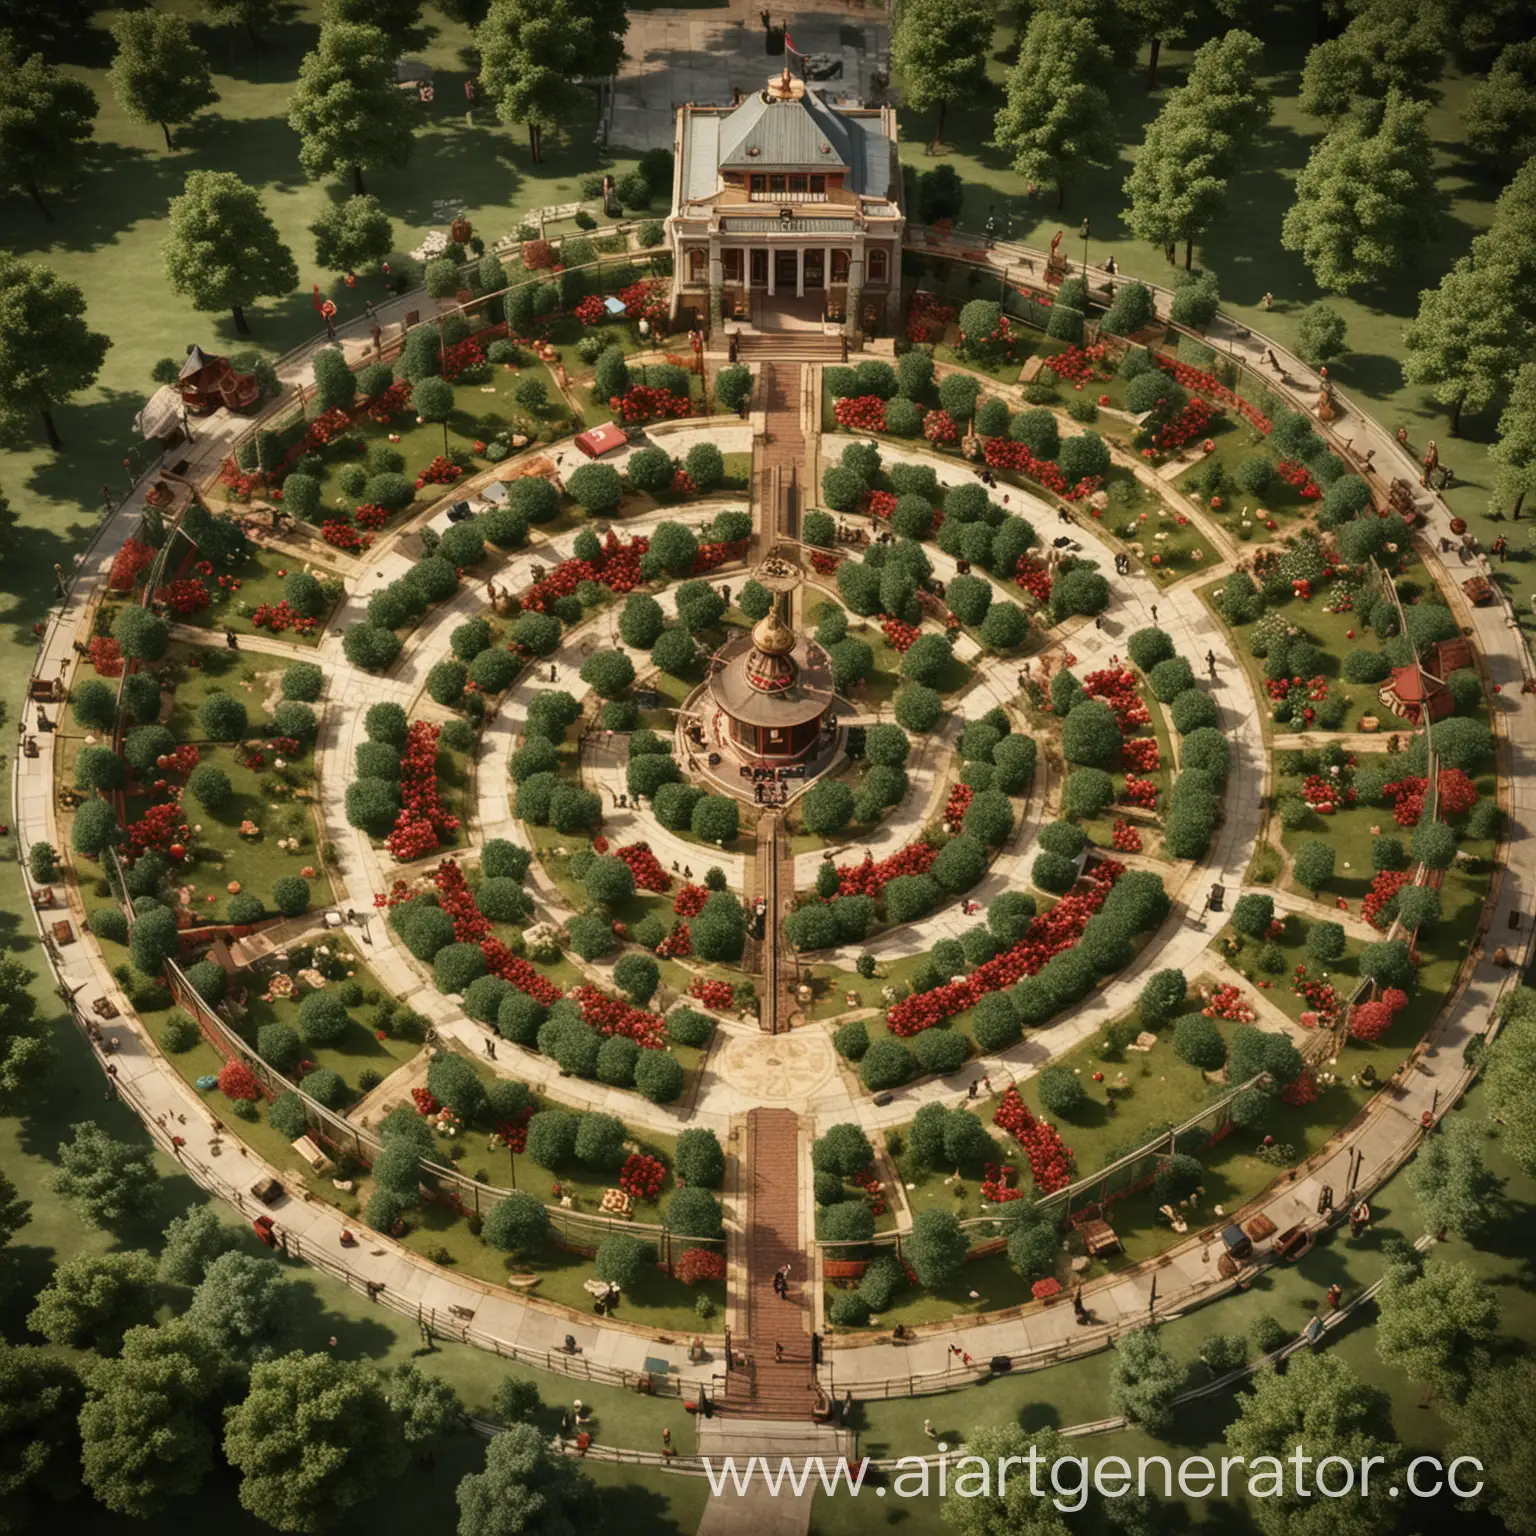 нарисуй план развлекательного казино-комплекса связанного по тематике с вишневым садом в стилистике 19 века